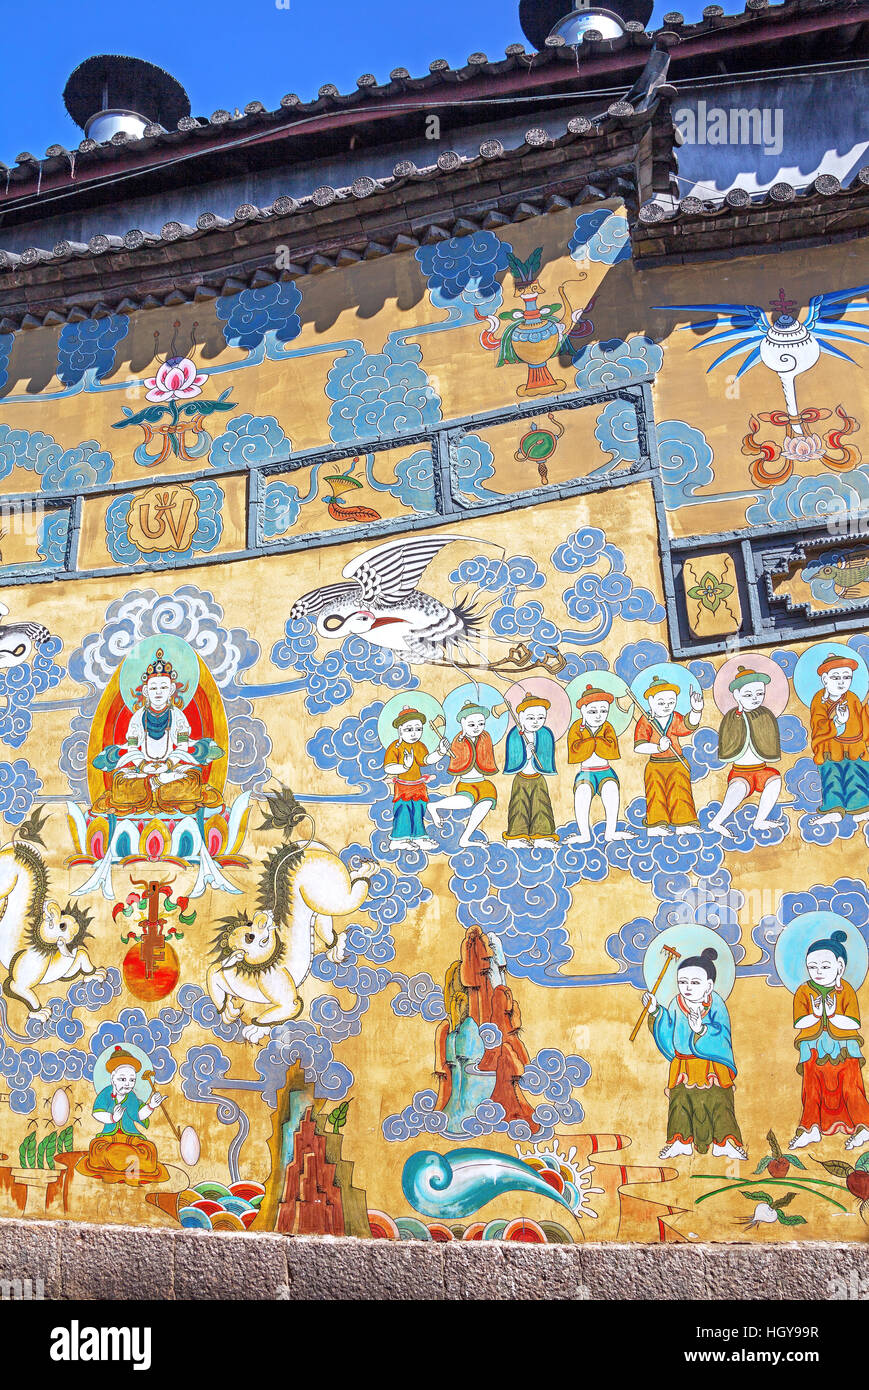 Peintures de Euroraum Naxi de Lijiang, Chine. Seulement quelques dizaines de personnes âgées peuvent lire ces caractères à l'heure actuelle. Banque D'Images